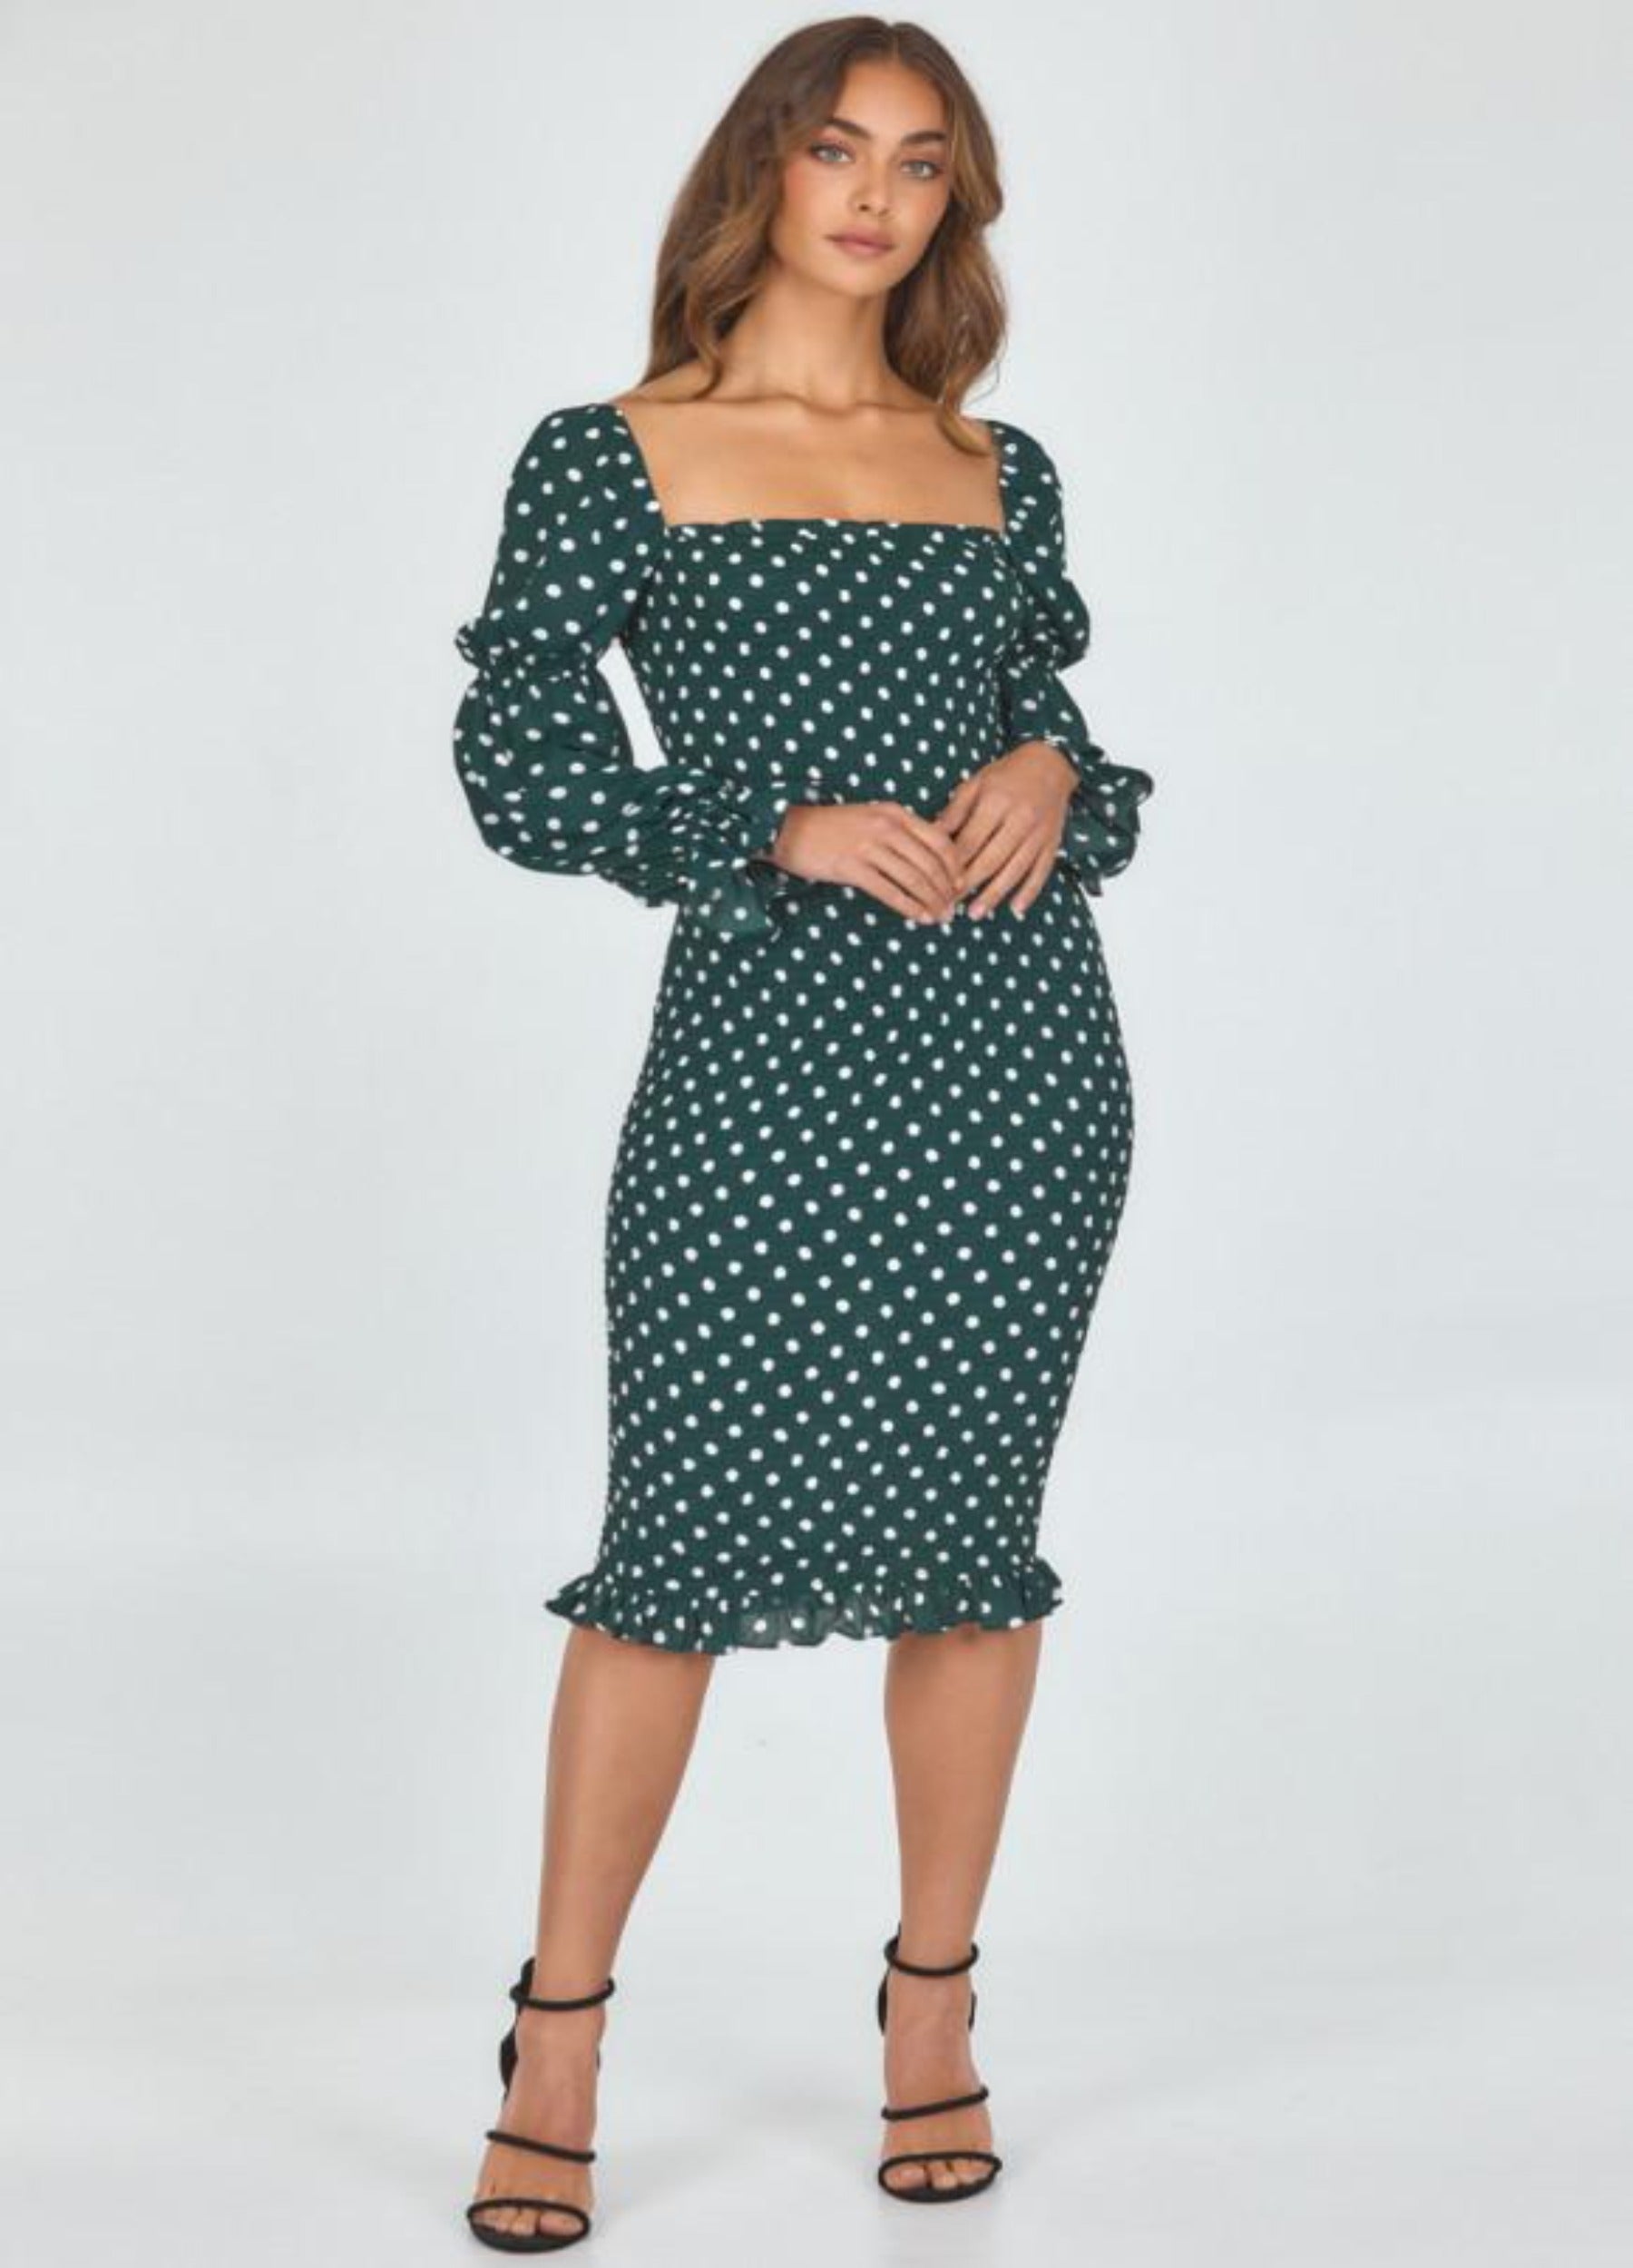 Model wearing dot print dress